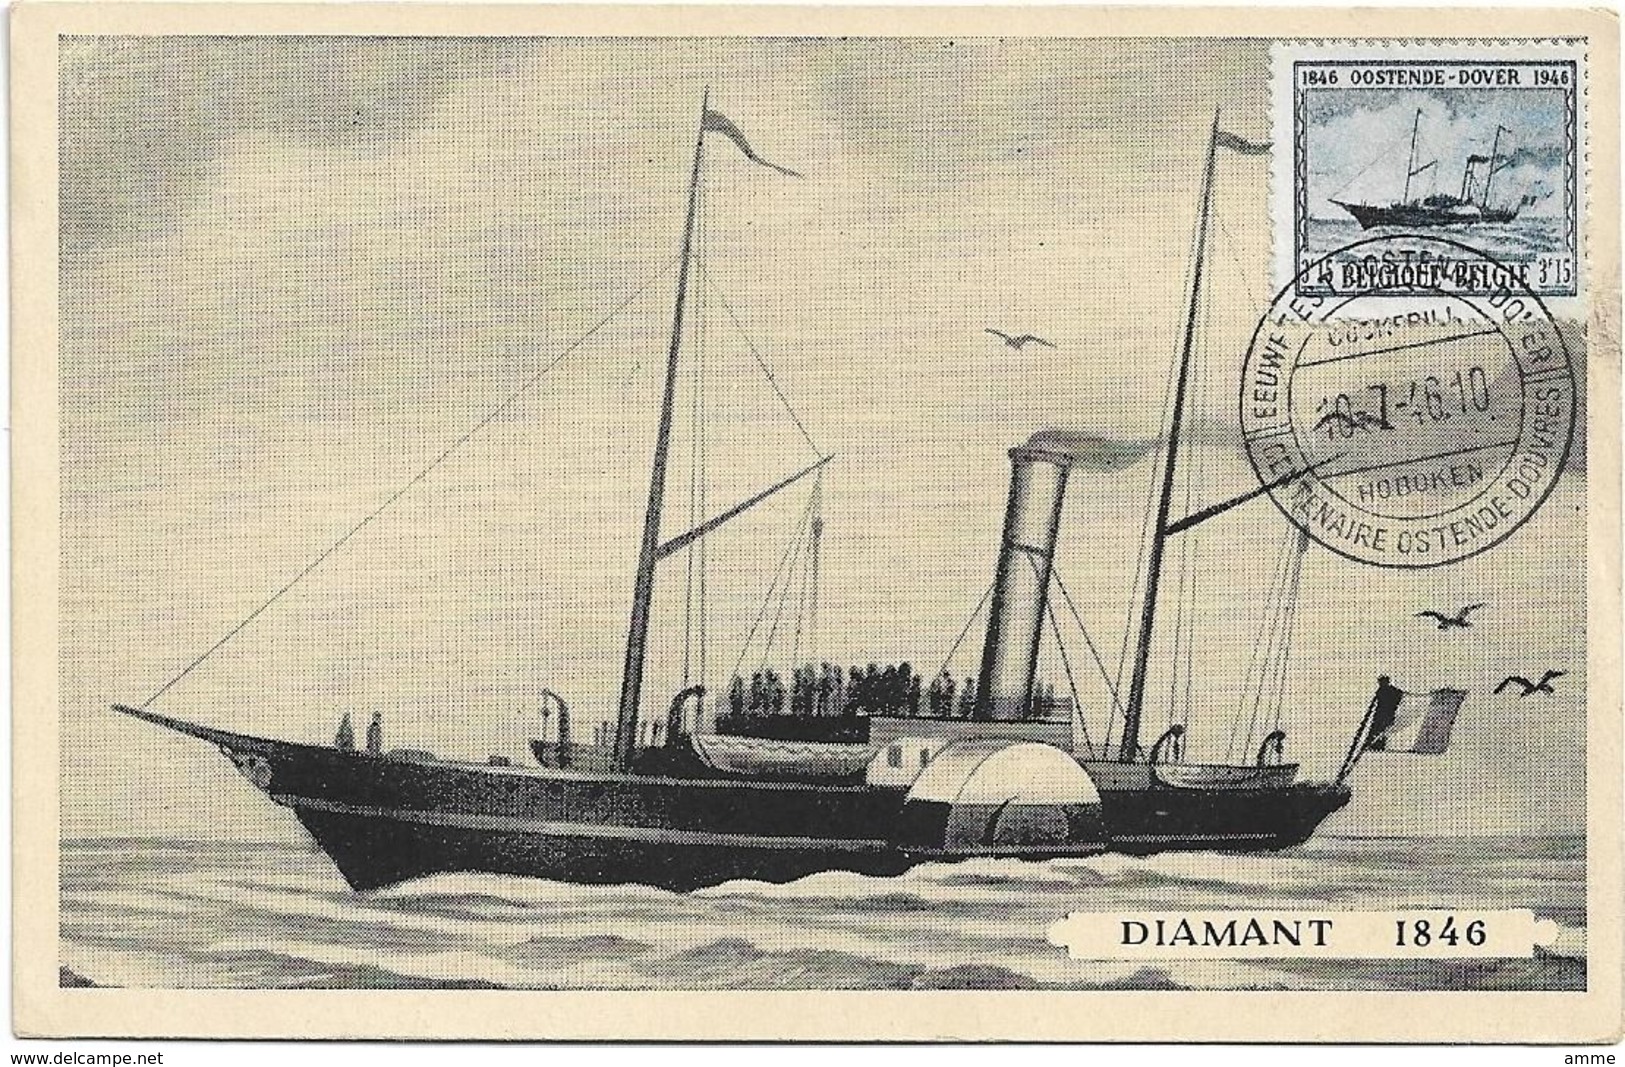 Oostende  *  Eeuwfeest - Centenaire Oostende - Dover 1946  ( Diamant 1846 ) - Bootkaarten